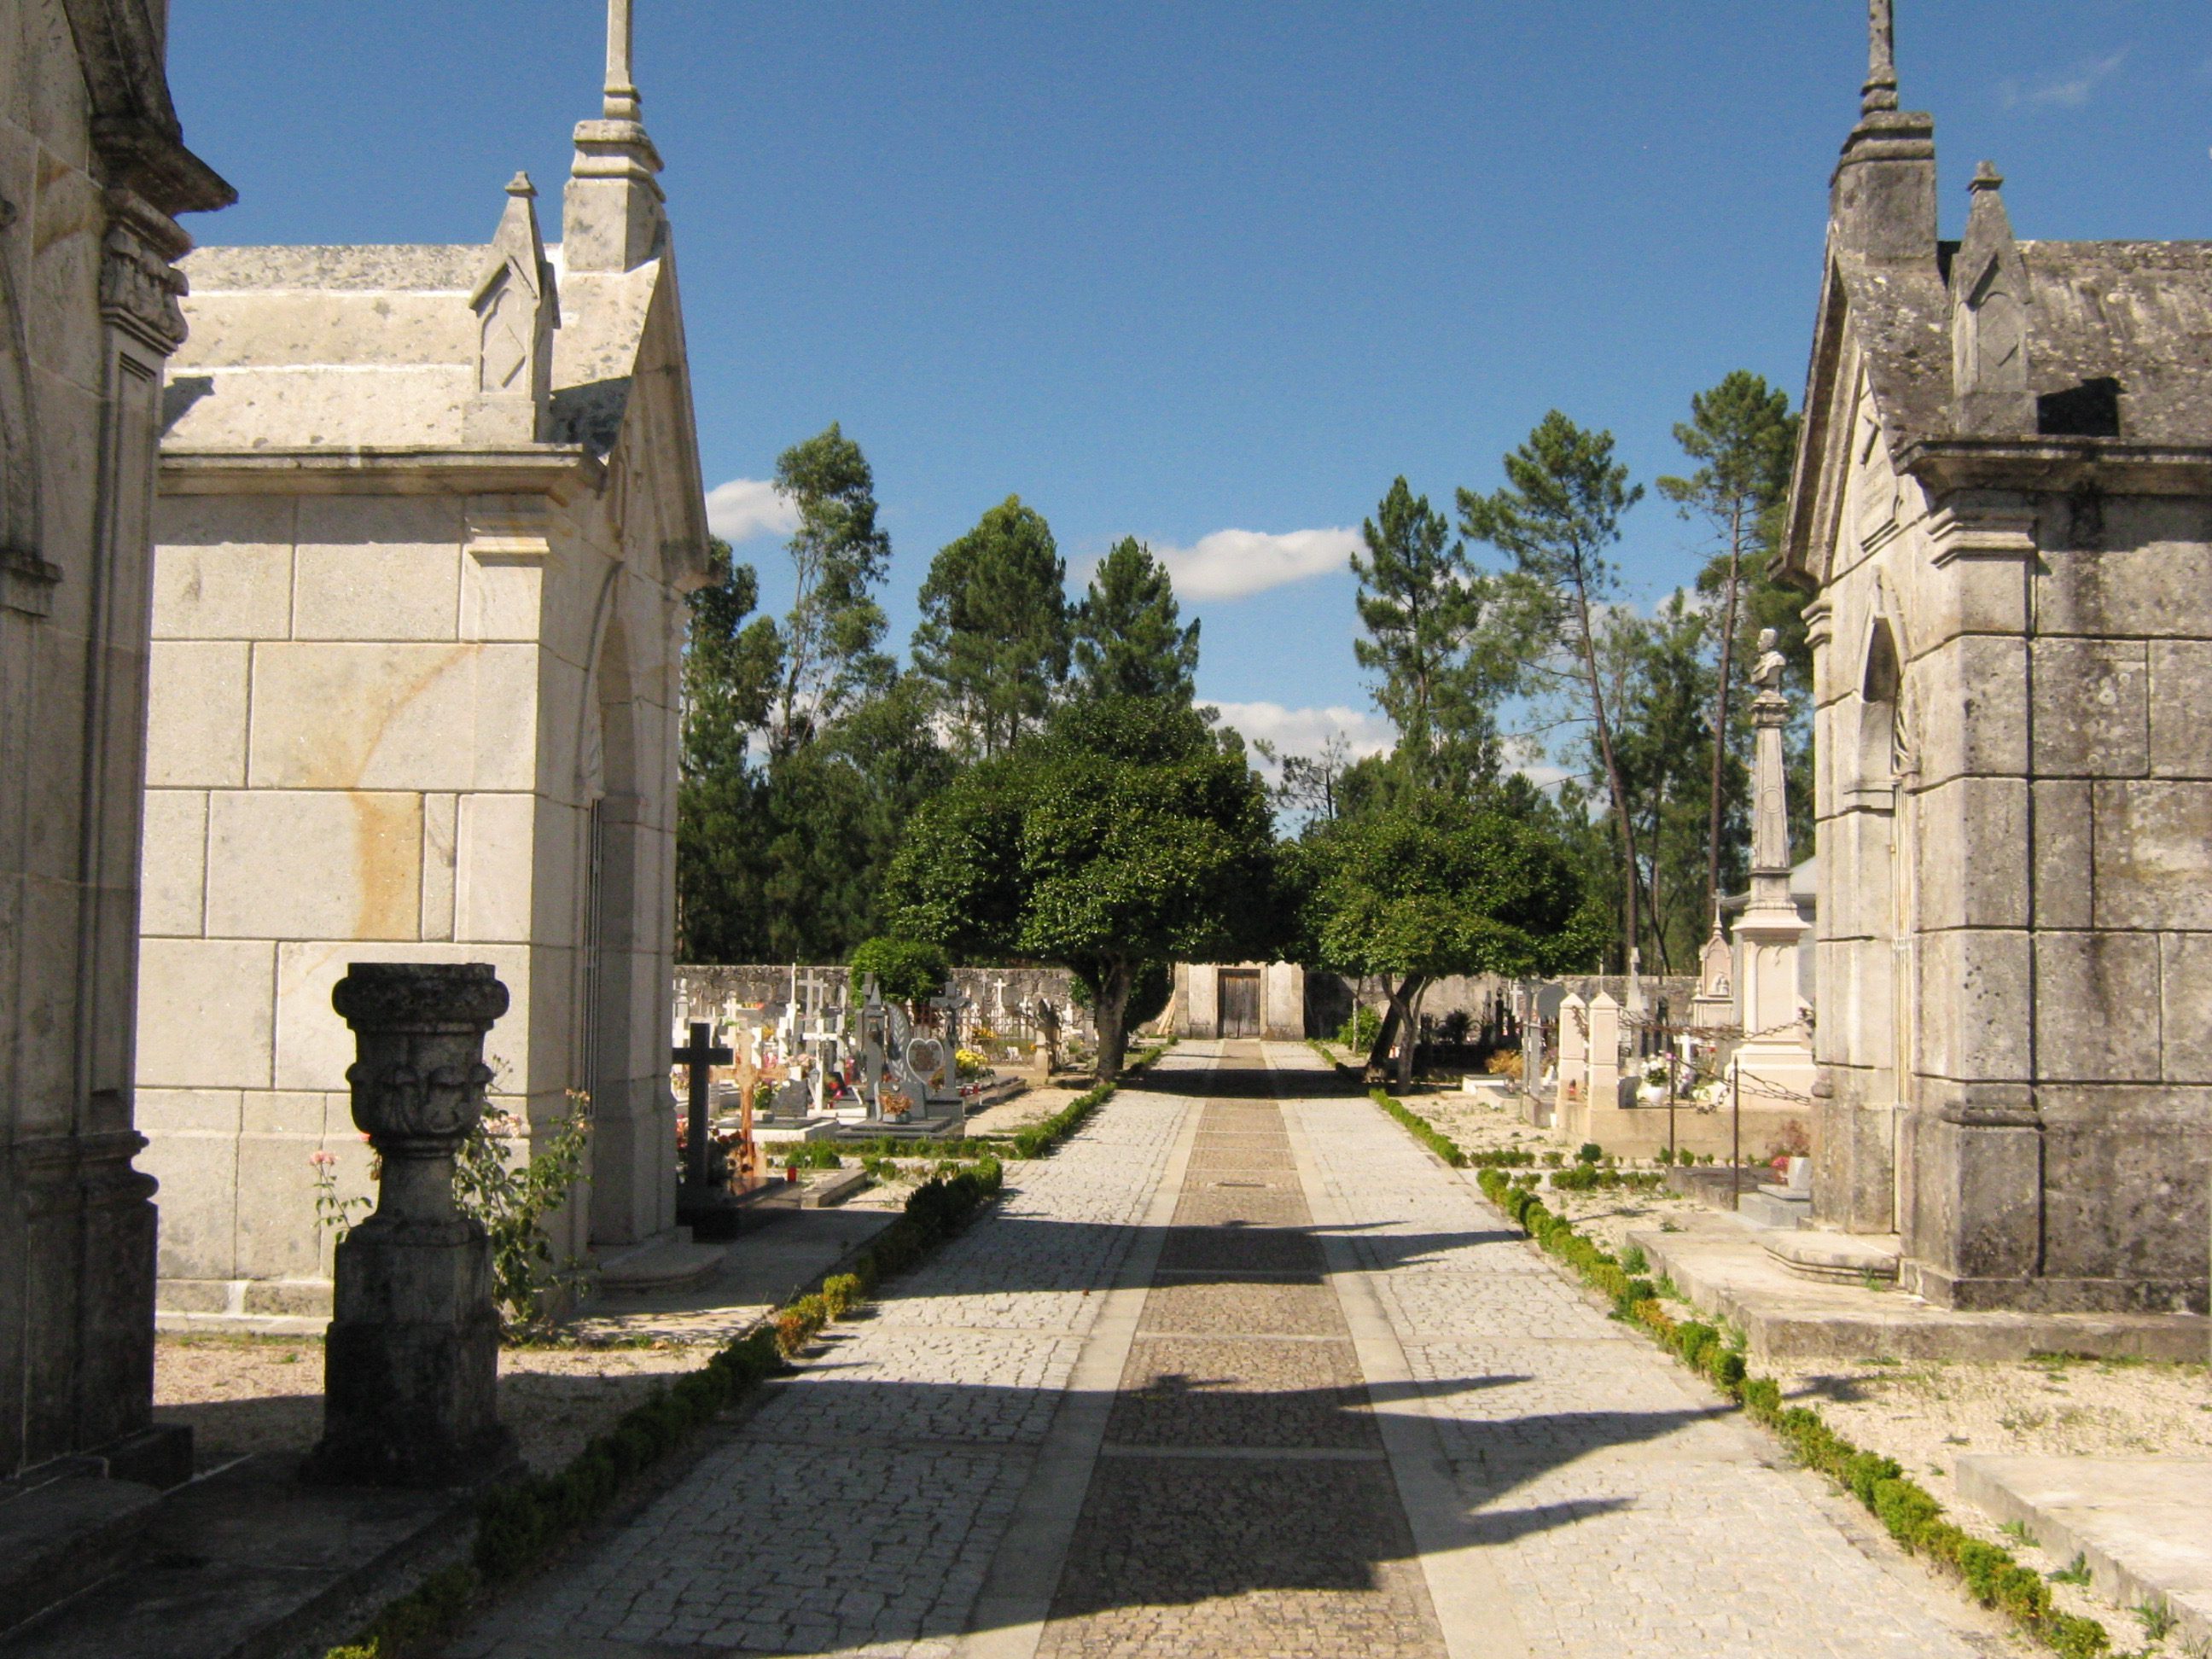 Celorico de Basto fecha cemitérios no Dia de Todos os Santos